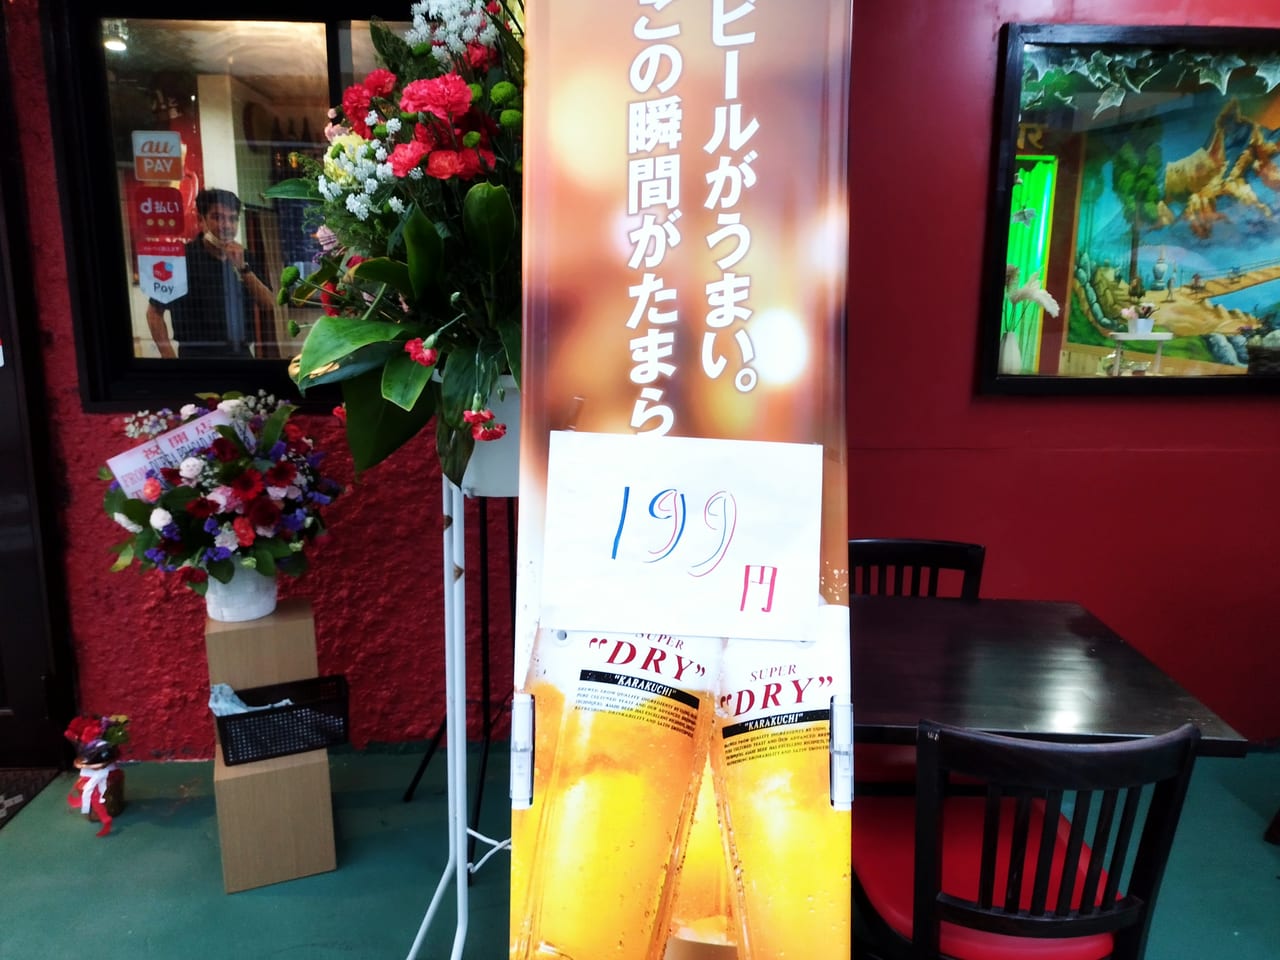 ビール199円の看板